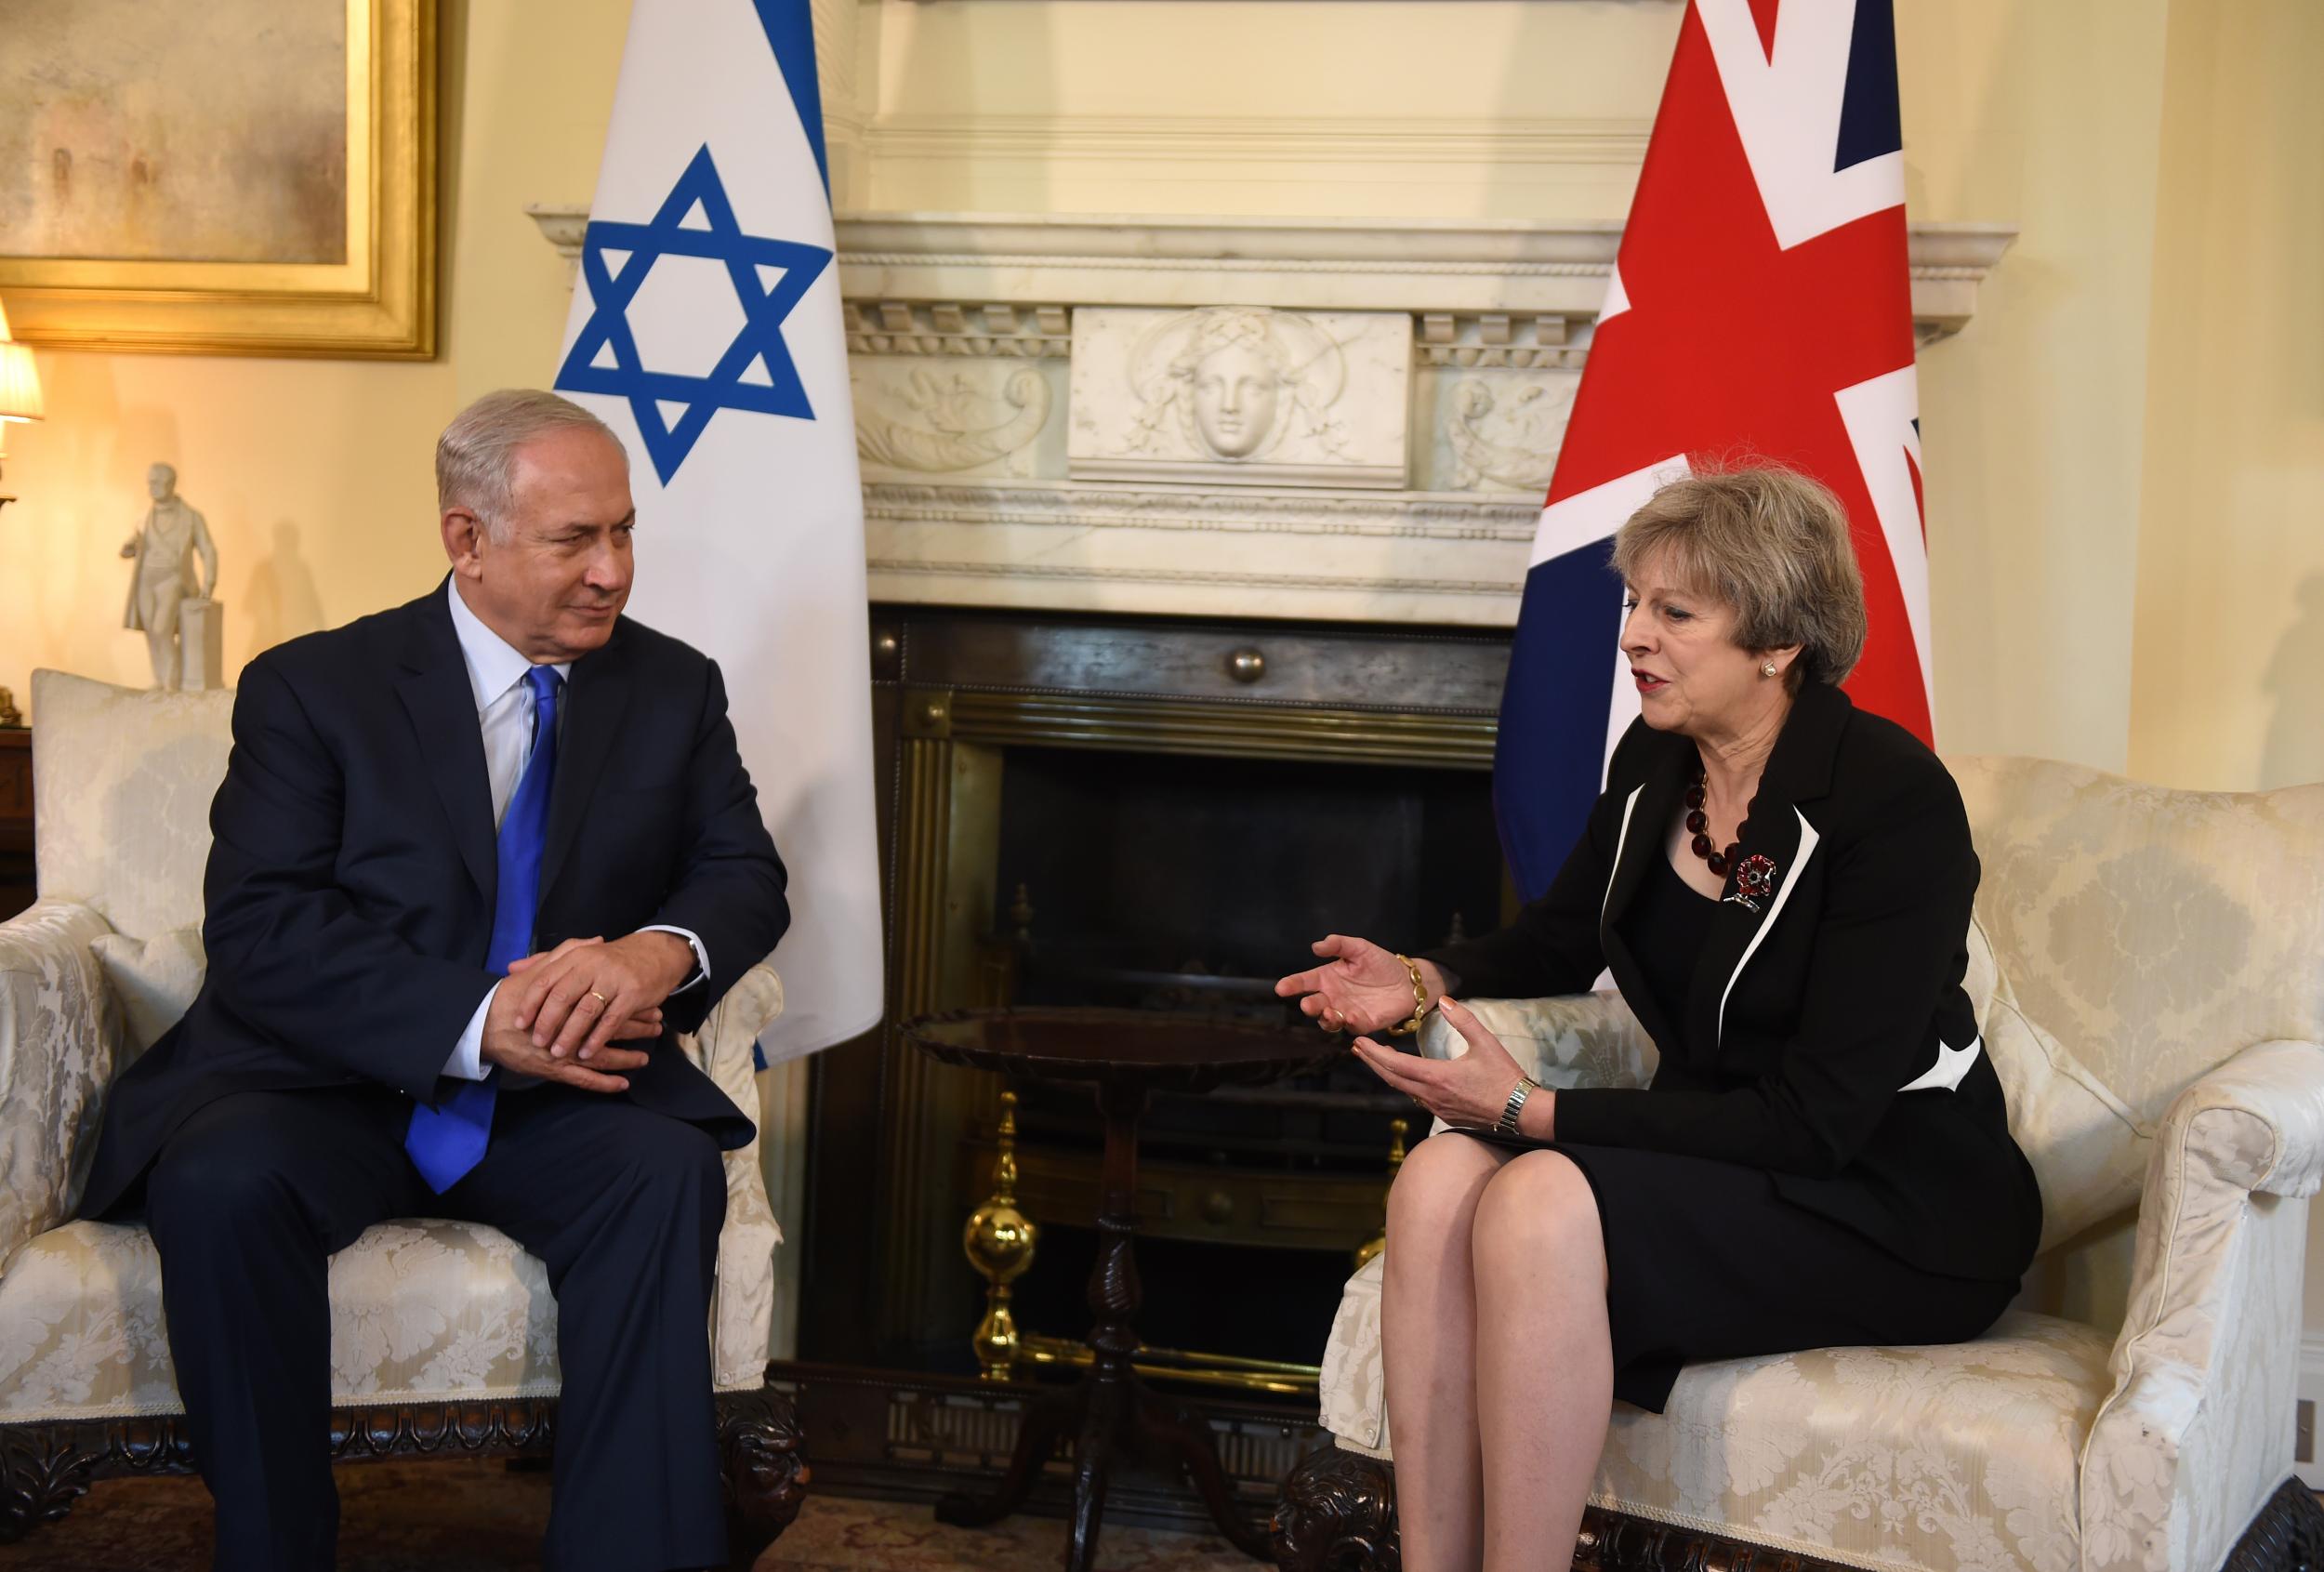 Theresa May met Benjamin Netanyahu without knowing Ms Patel had met him a few weeks before